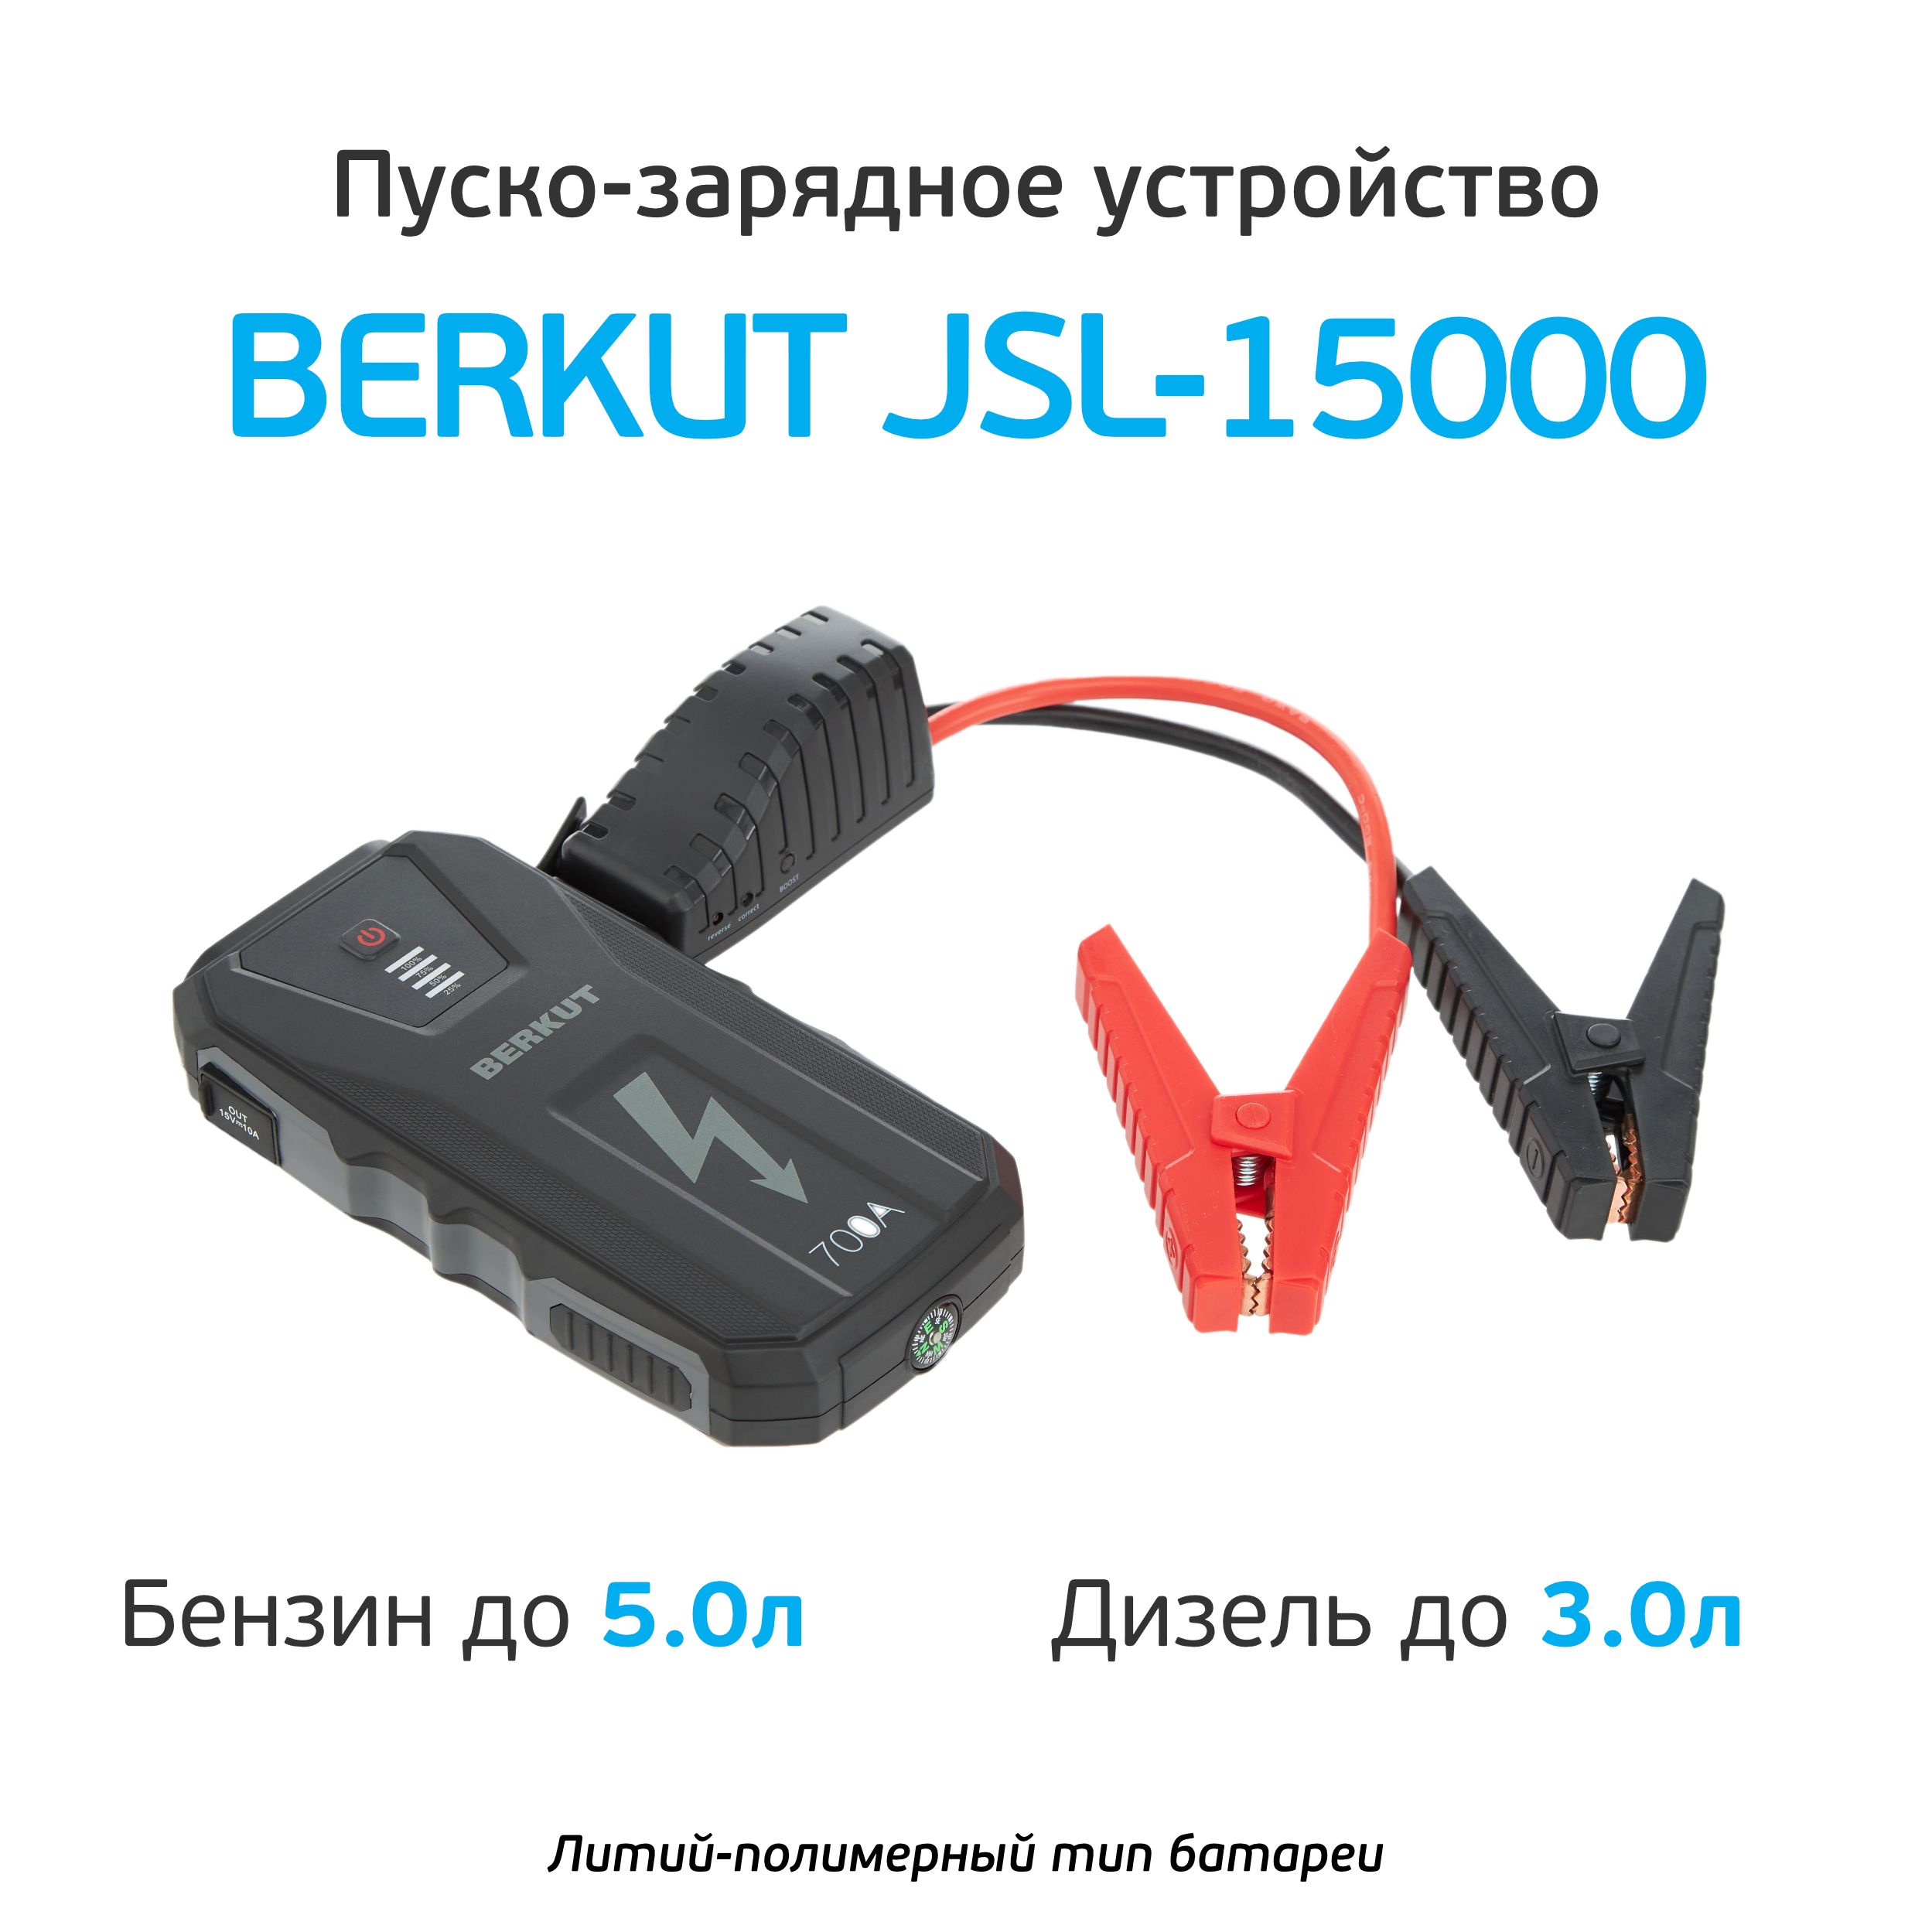 Пуско зарядное устройство jsl. Беркут 15000 пуско-зарядное устройство. Пуско-зарядное устройство Berkut JSL-15000. Пуско-зарядное устройство Berkut Specialist JSL-25000. Berkut Specialist JSL-20000.